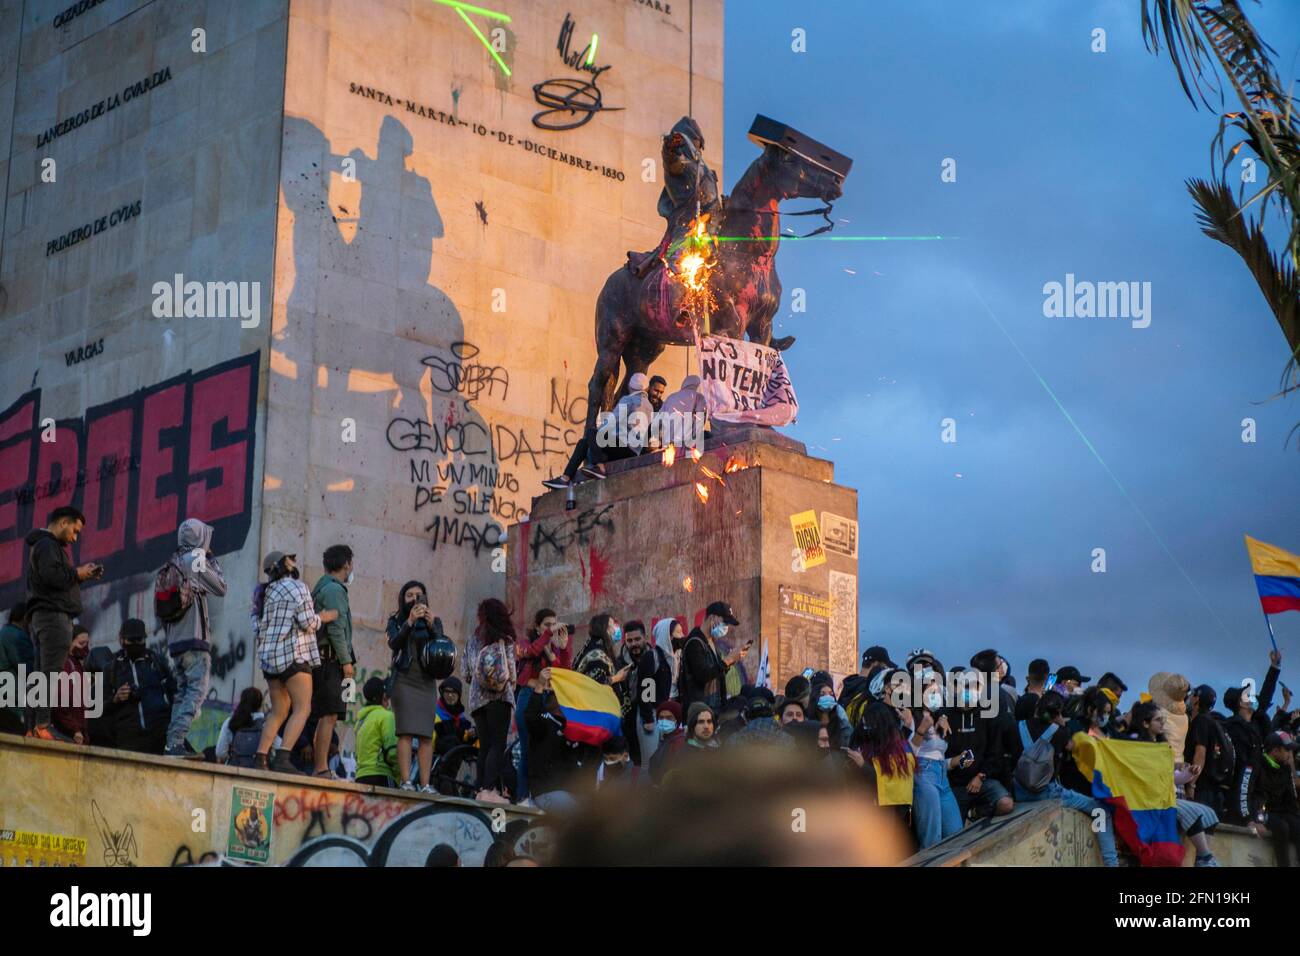 12 mai 2021 : les gens marchent dans la grève nationale à Bogota. Crédit : Daniel Garzon Herazo/ZUMA Wire/Alay Live News Banque D'Images